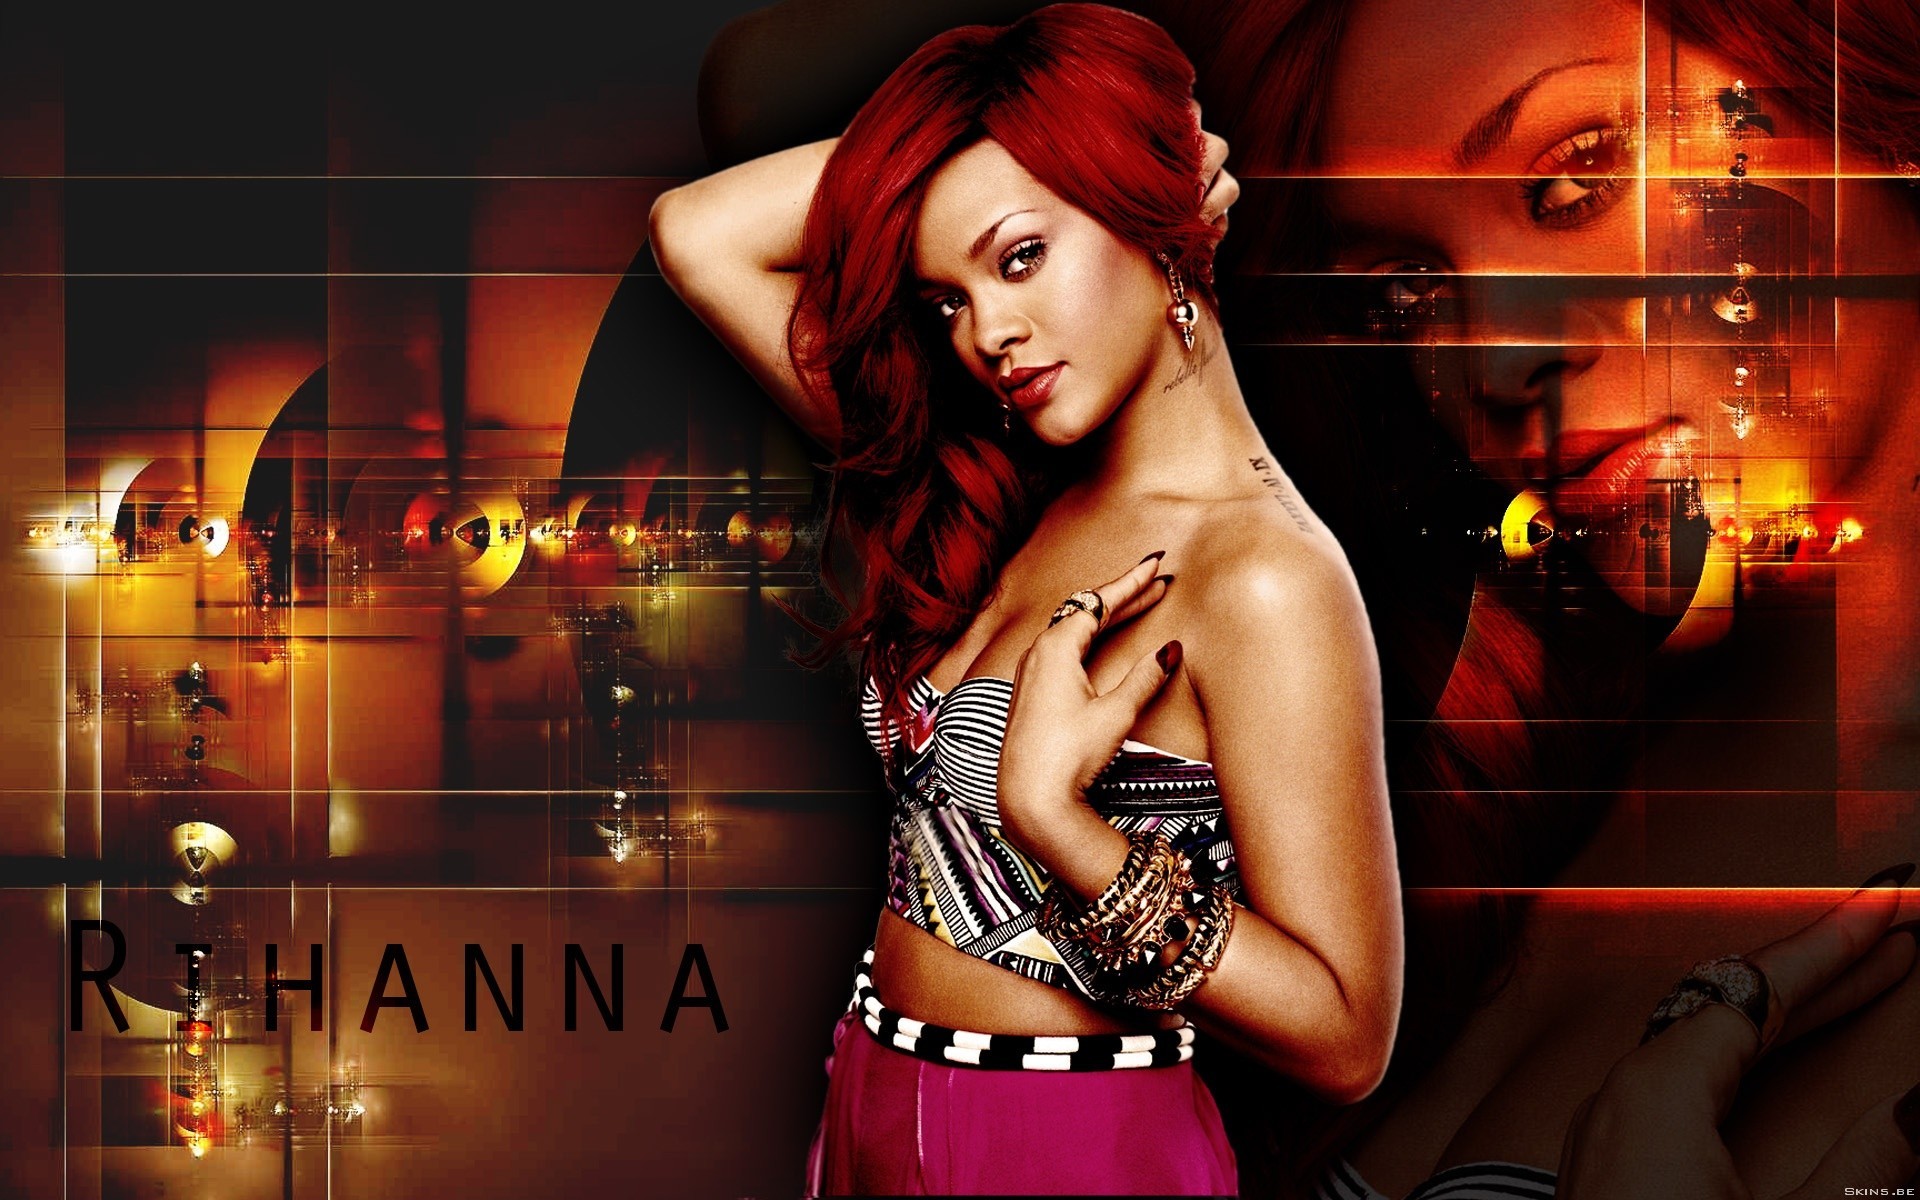 1920x1200 ... x 1200 Original. Description: Download Rihanna 54 Rihanna wallpaper ...